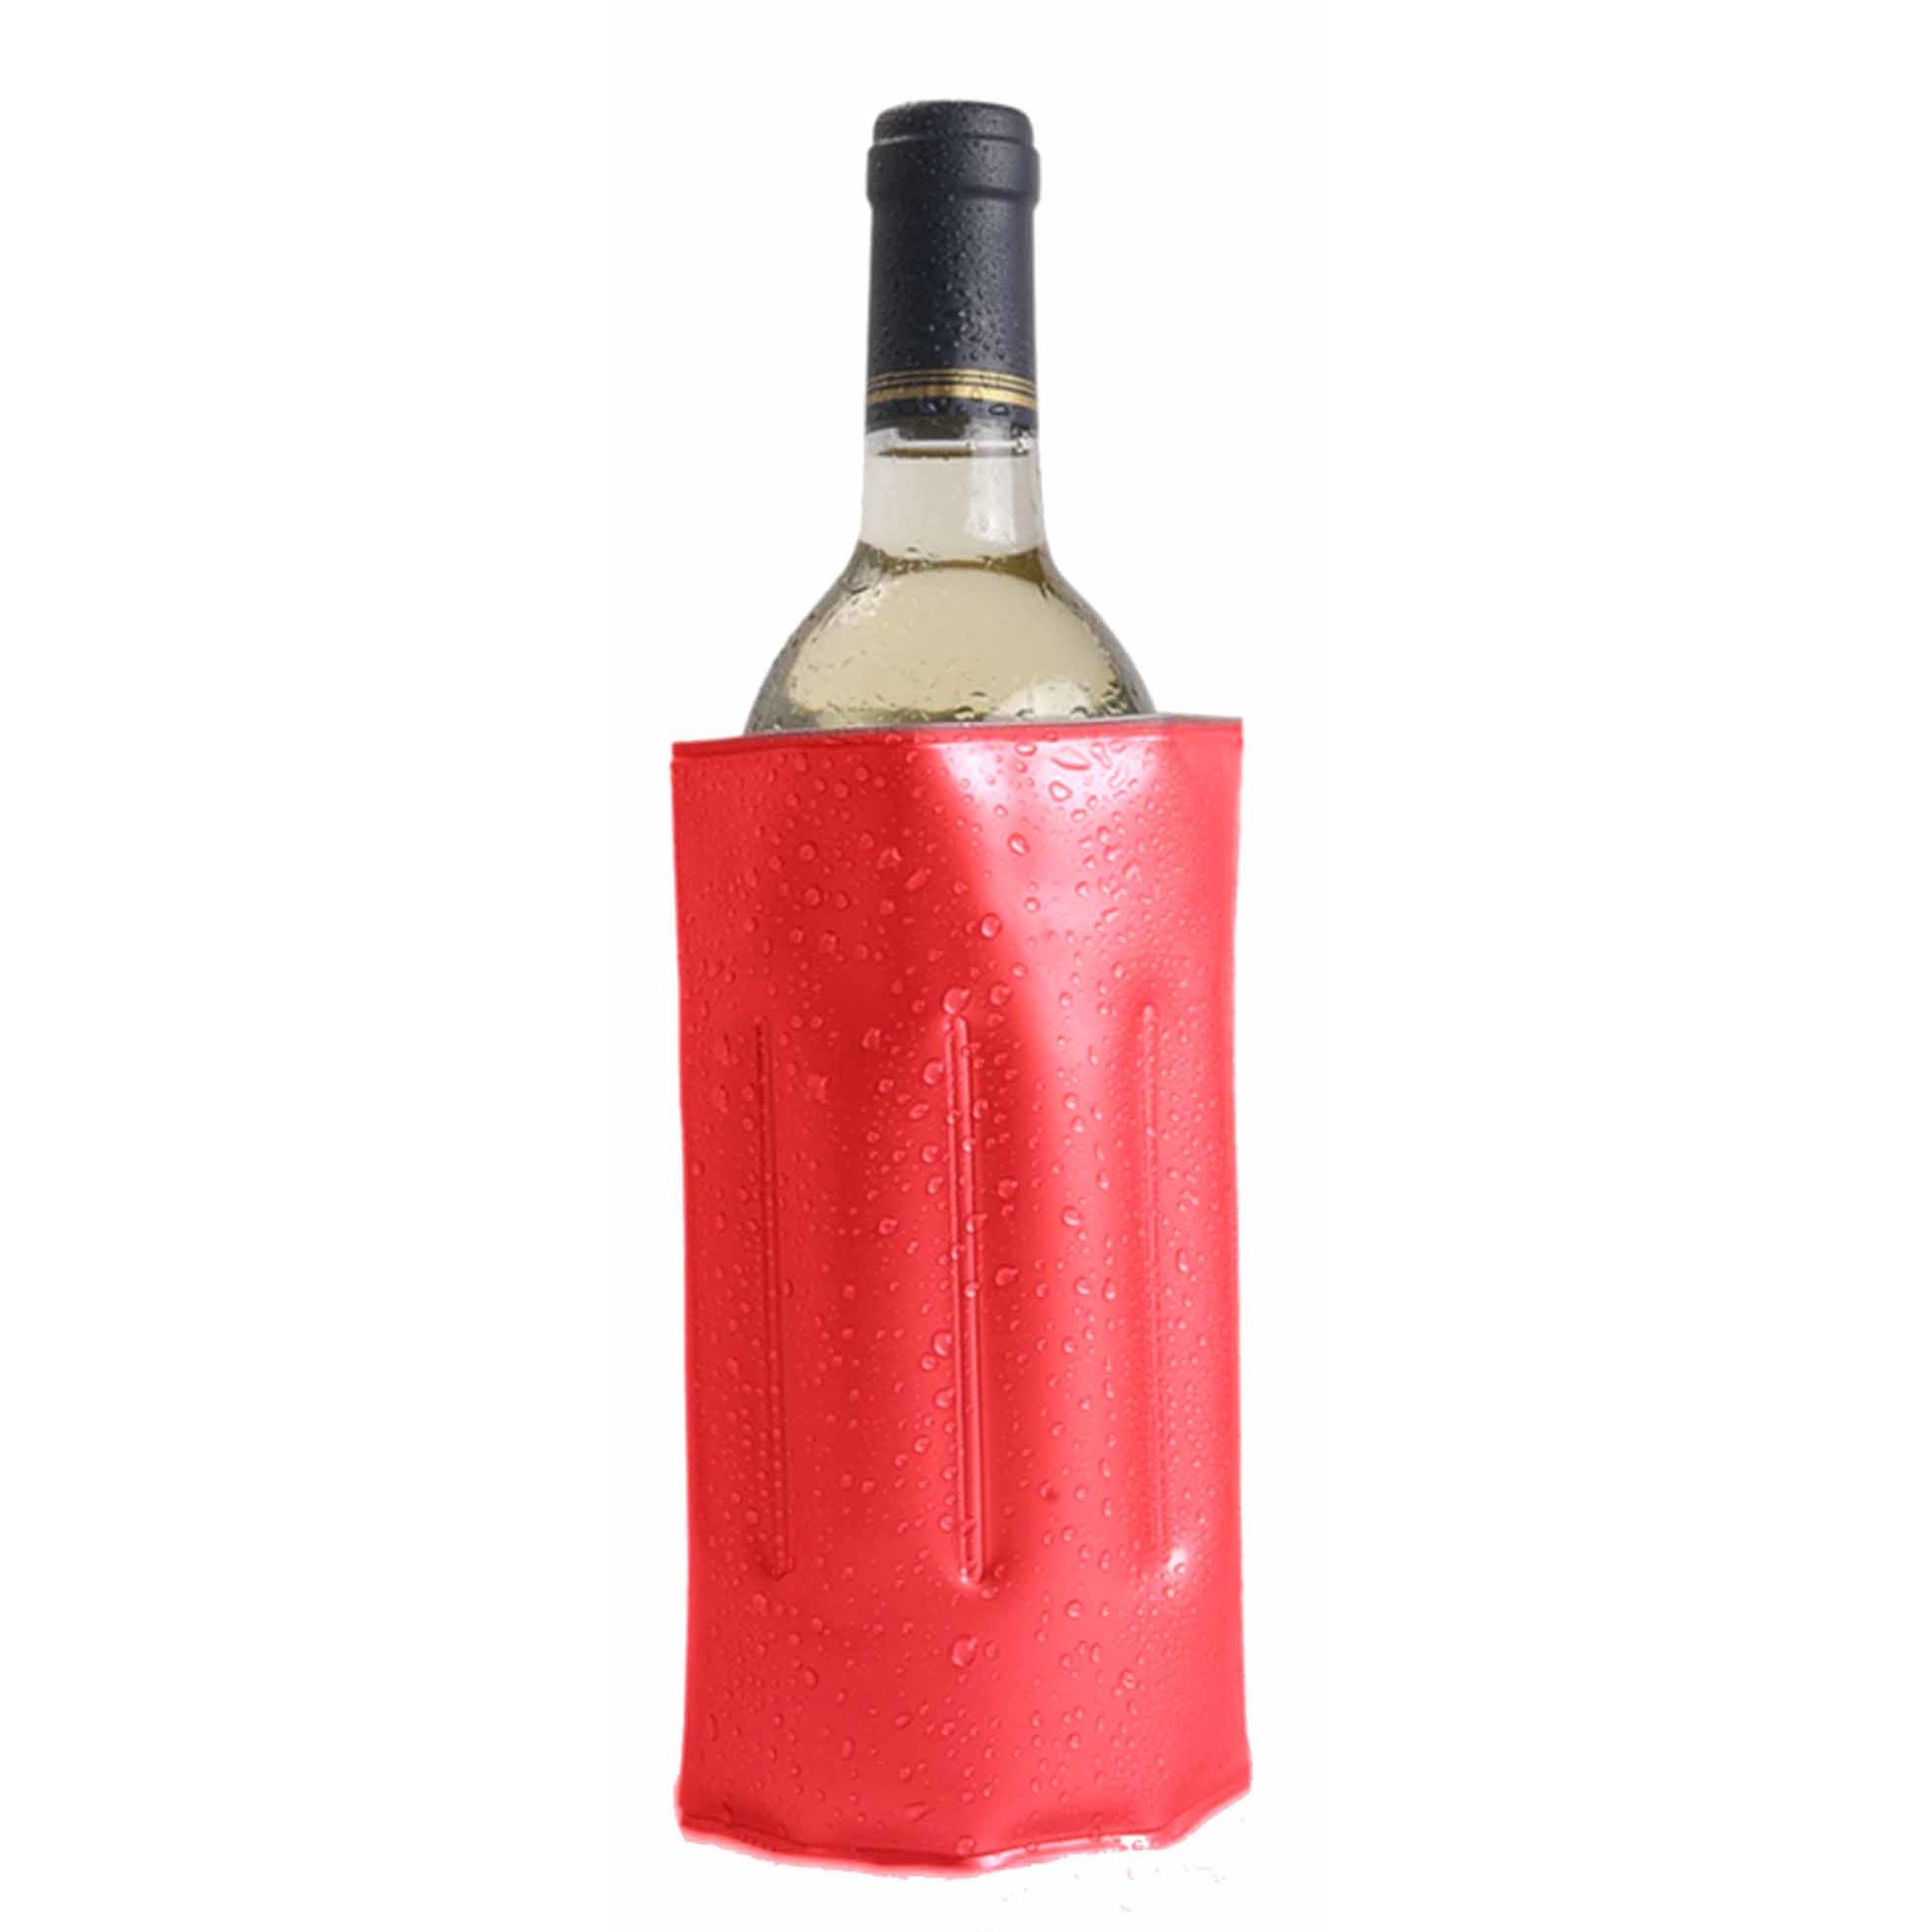 1x Wijnflessen-drankflessen koeler hoes rood 34 x 18 cm